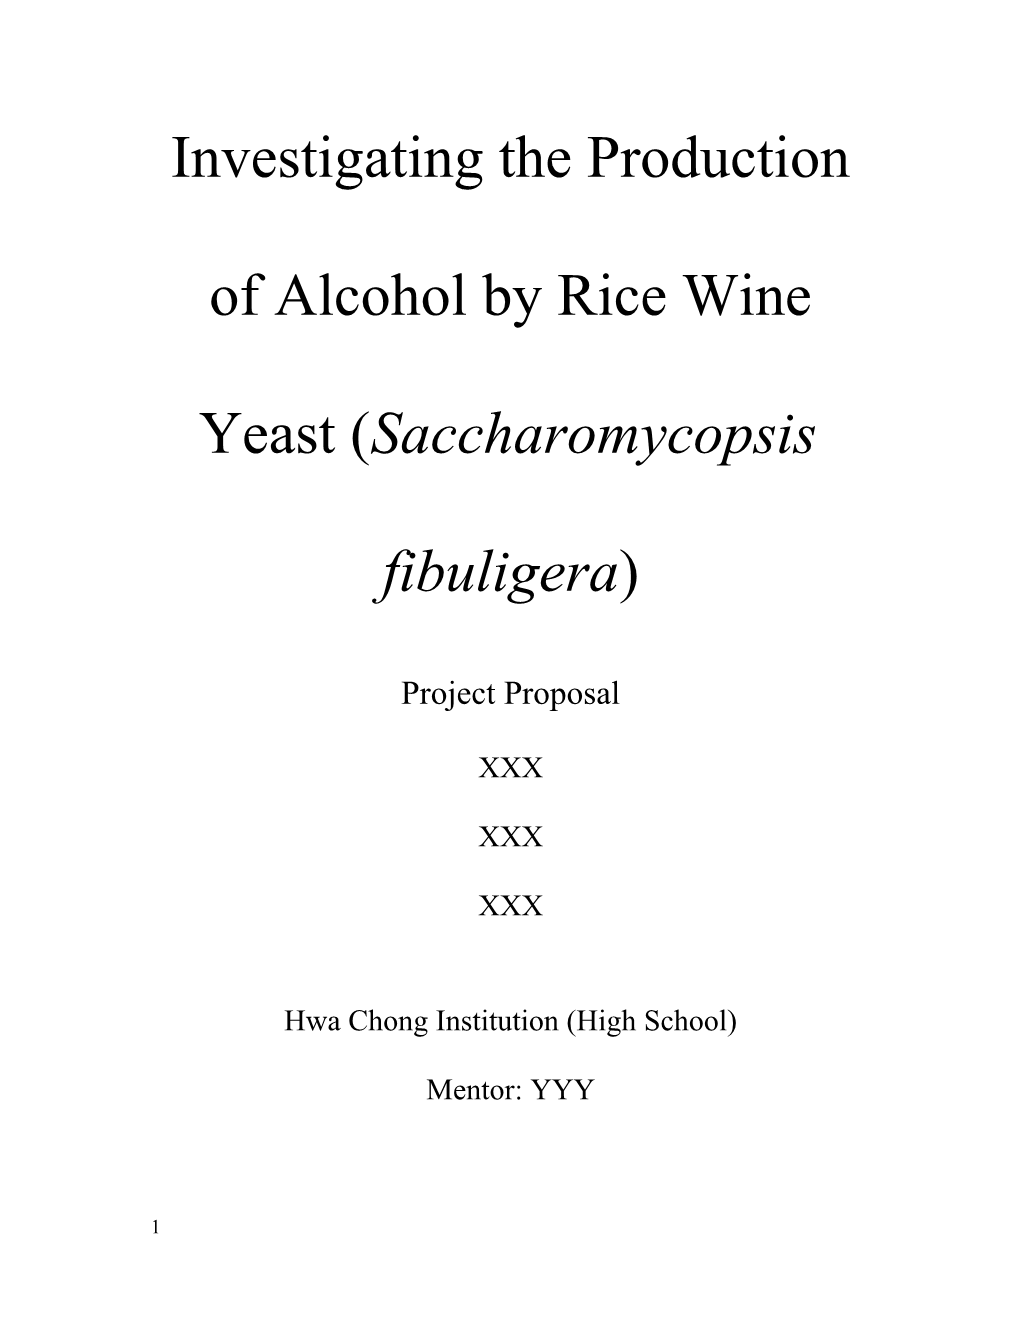 Investigating Ethanol Production by Rice Wine Yeast (Saccharomycopsis Fibuligera)